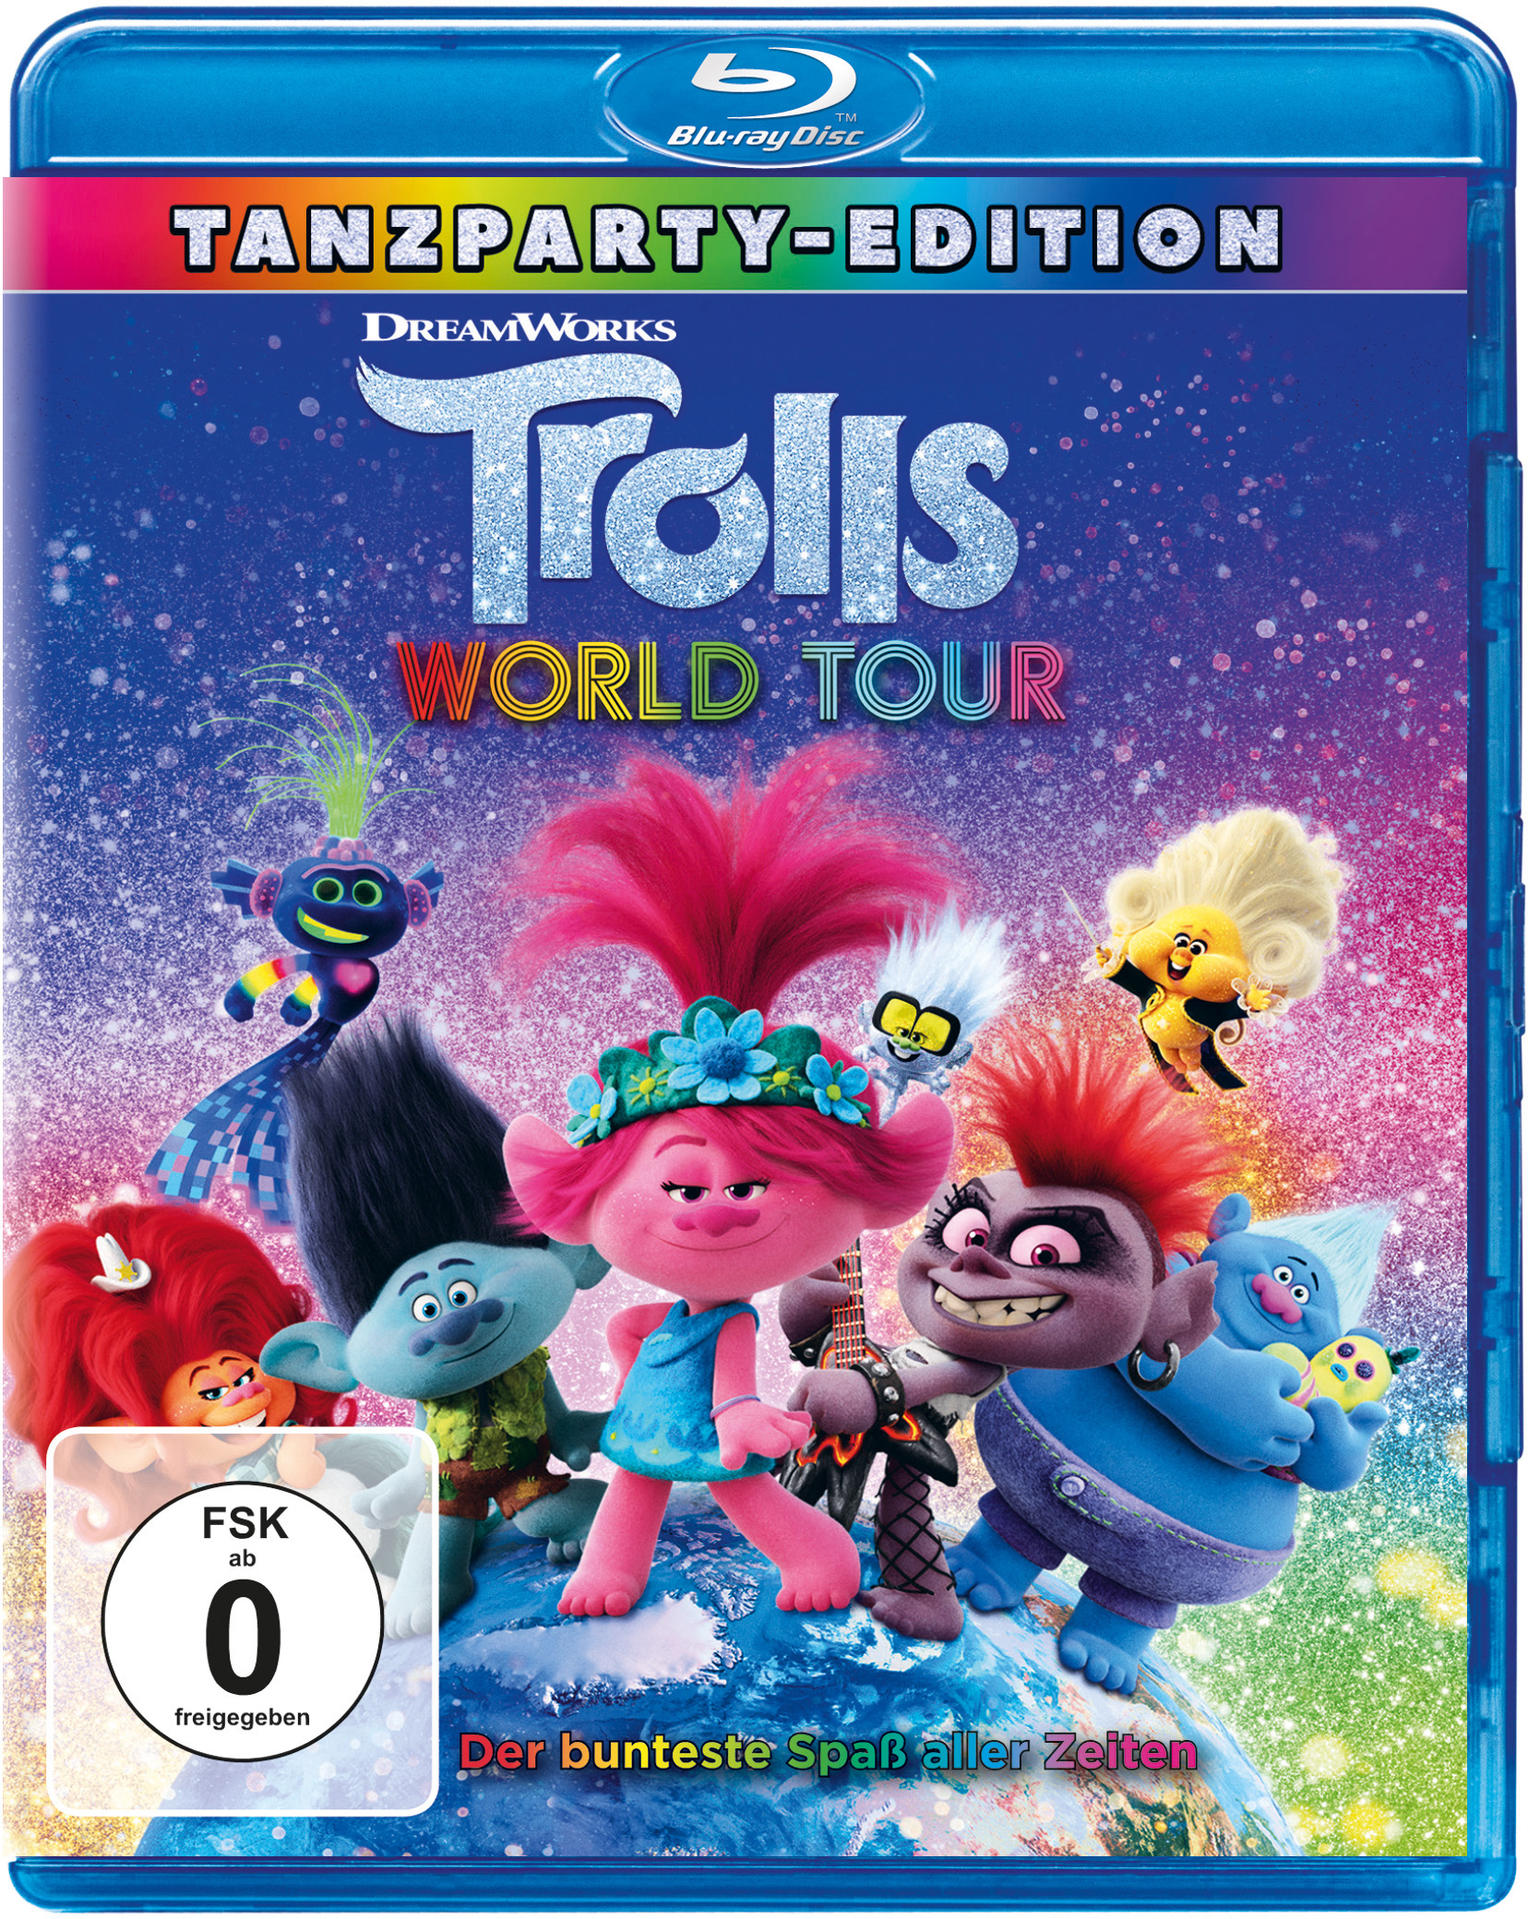 Trolls World - Blu-ray 2 Tour Trolls